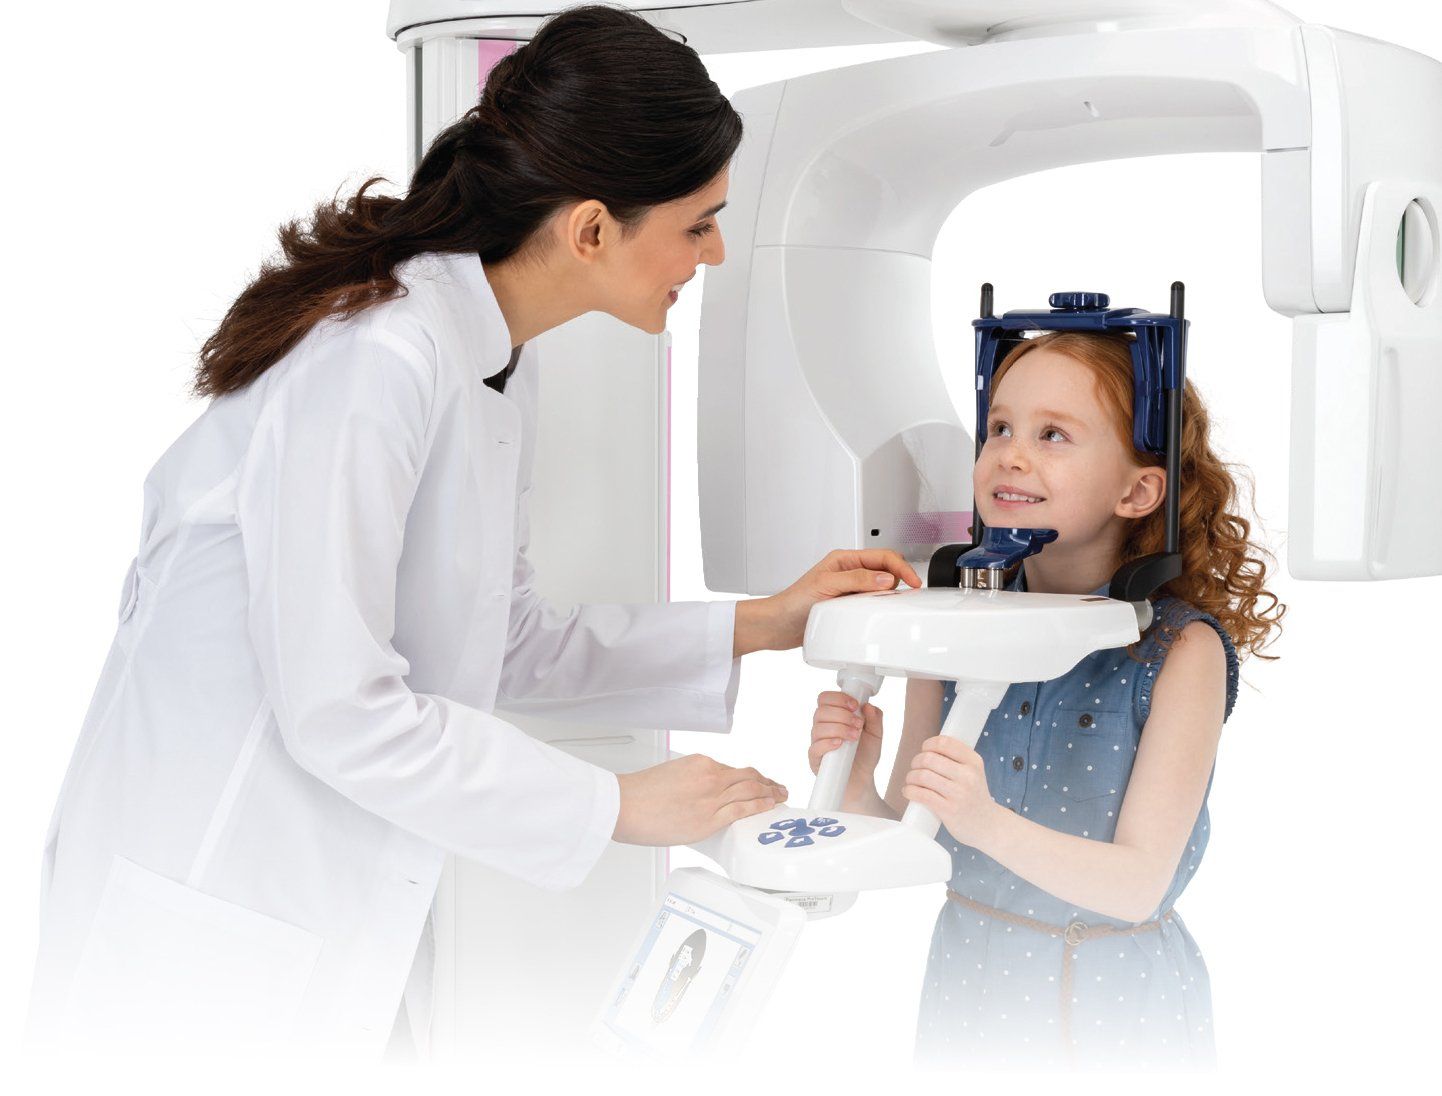 Nurse scanning a child